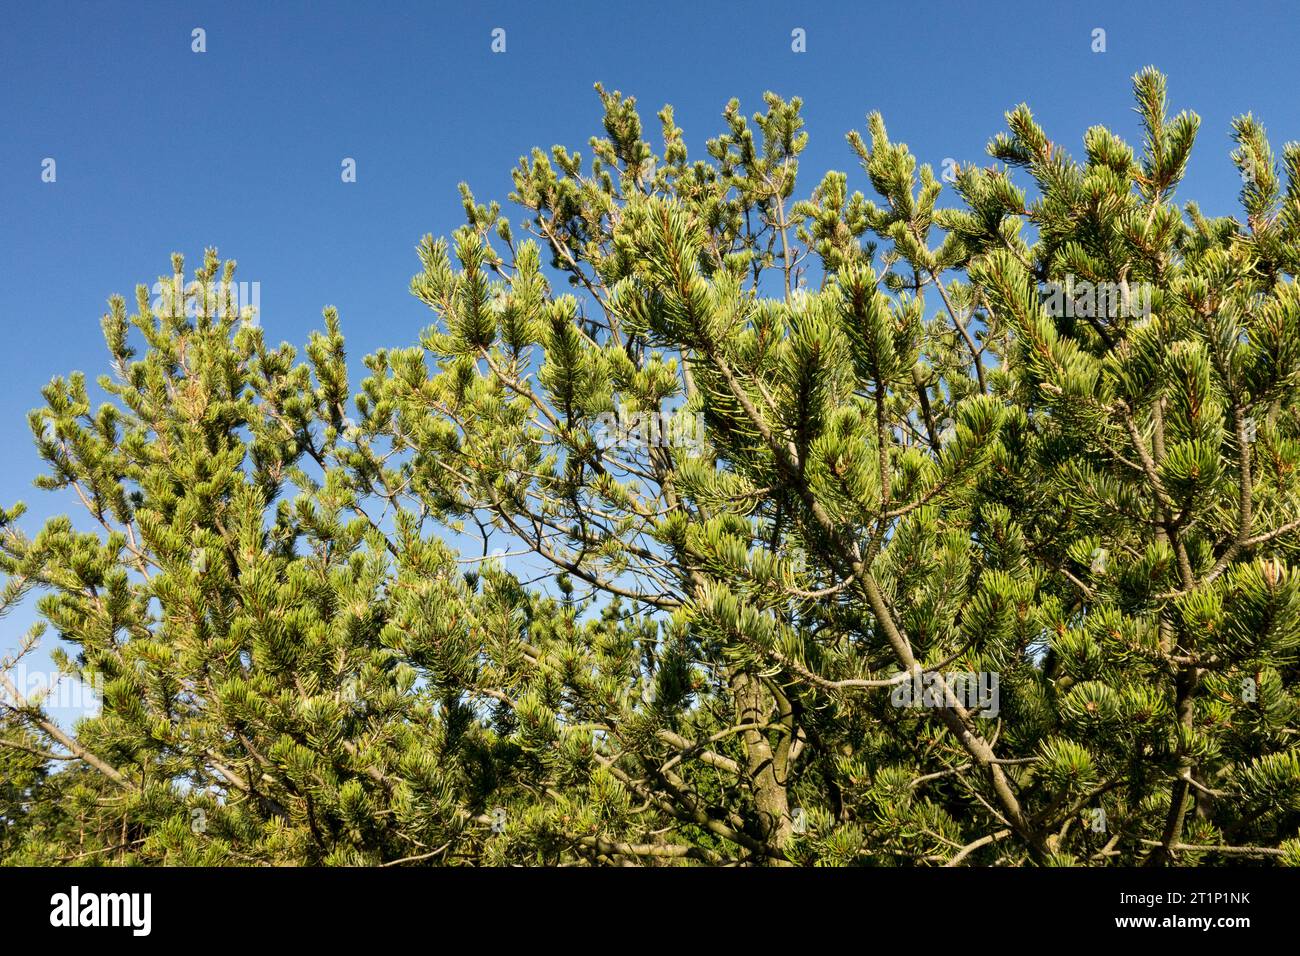 Two-needle Pine, Colorado Pinyon Pine, Pinus edulis, Pinyon Pine, Tree, branches Stock Photo